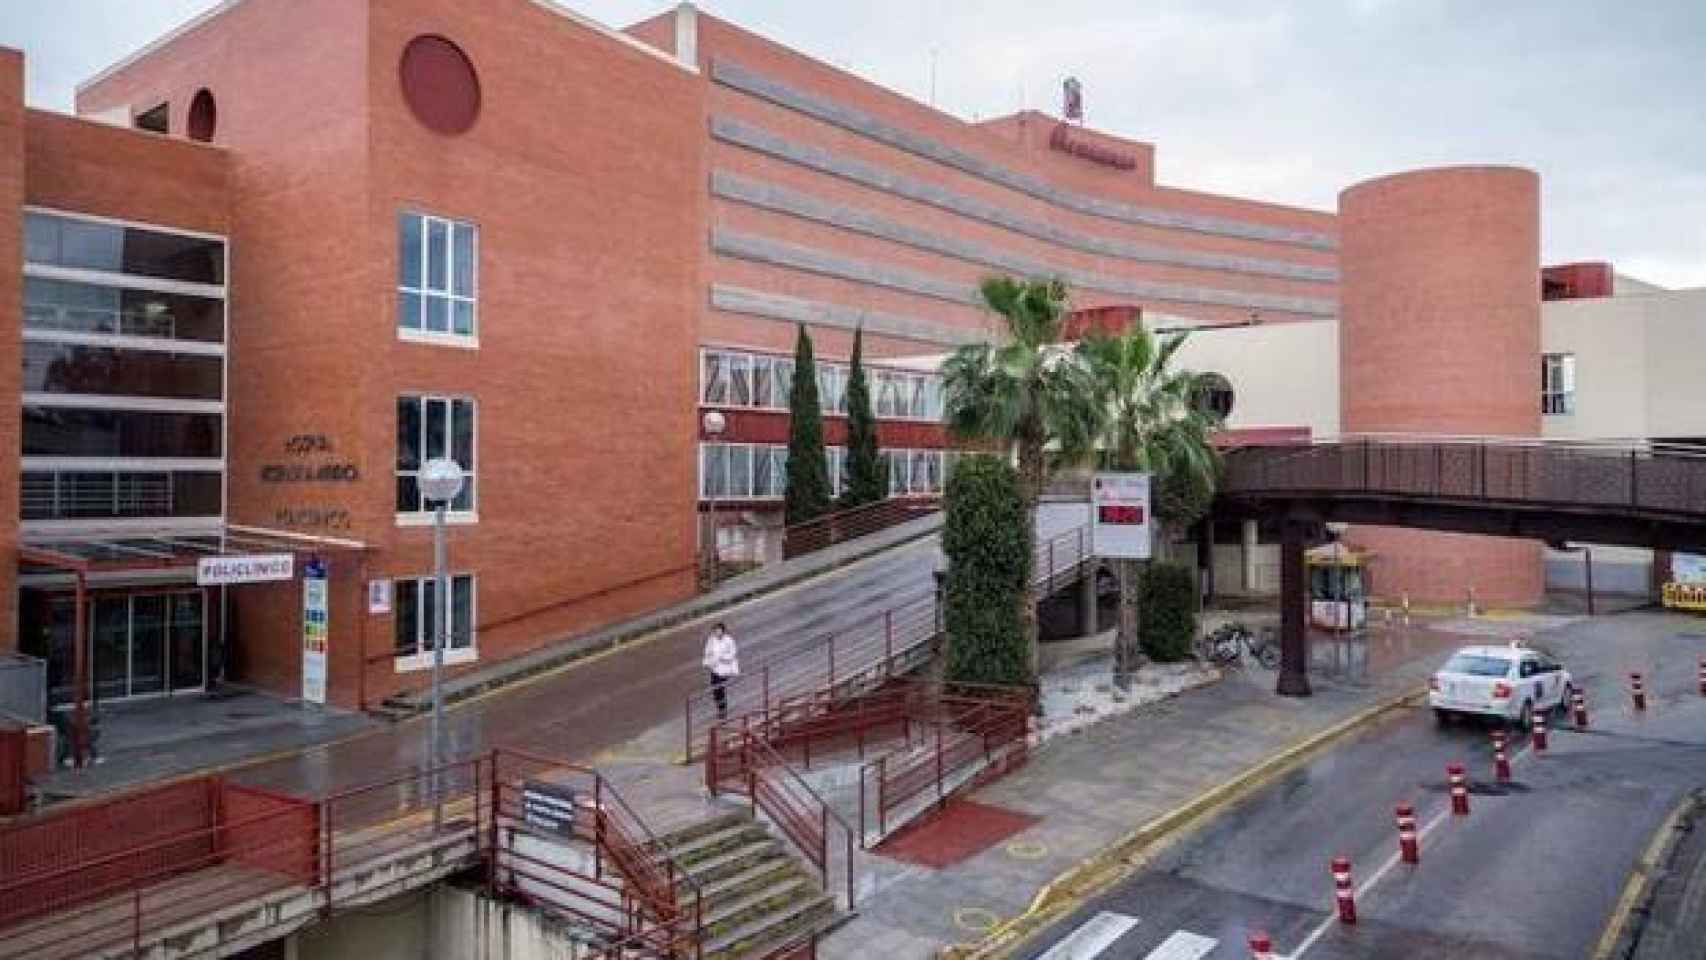 La agredida fue trasladada al Hospital Virgen de la Arrixaca debido a la gravedad de las heridas.